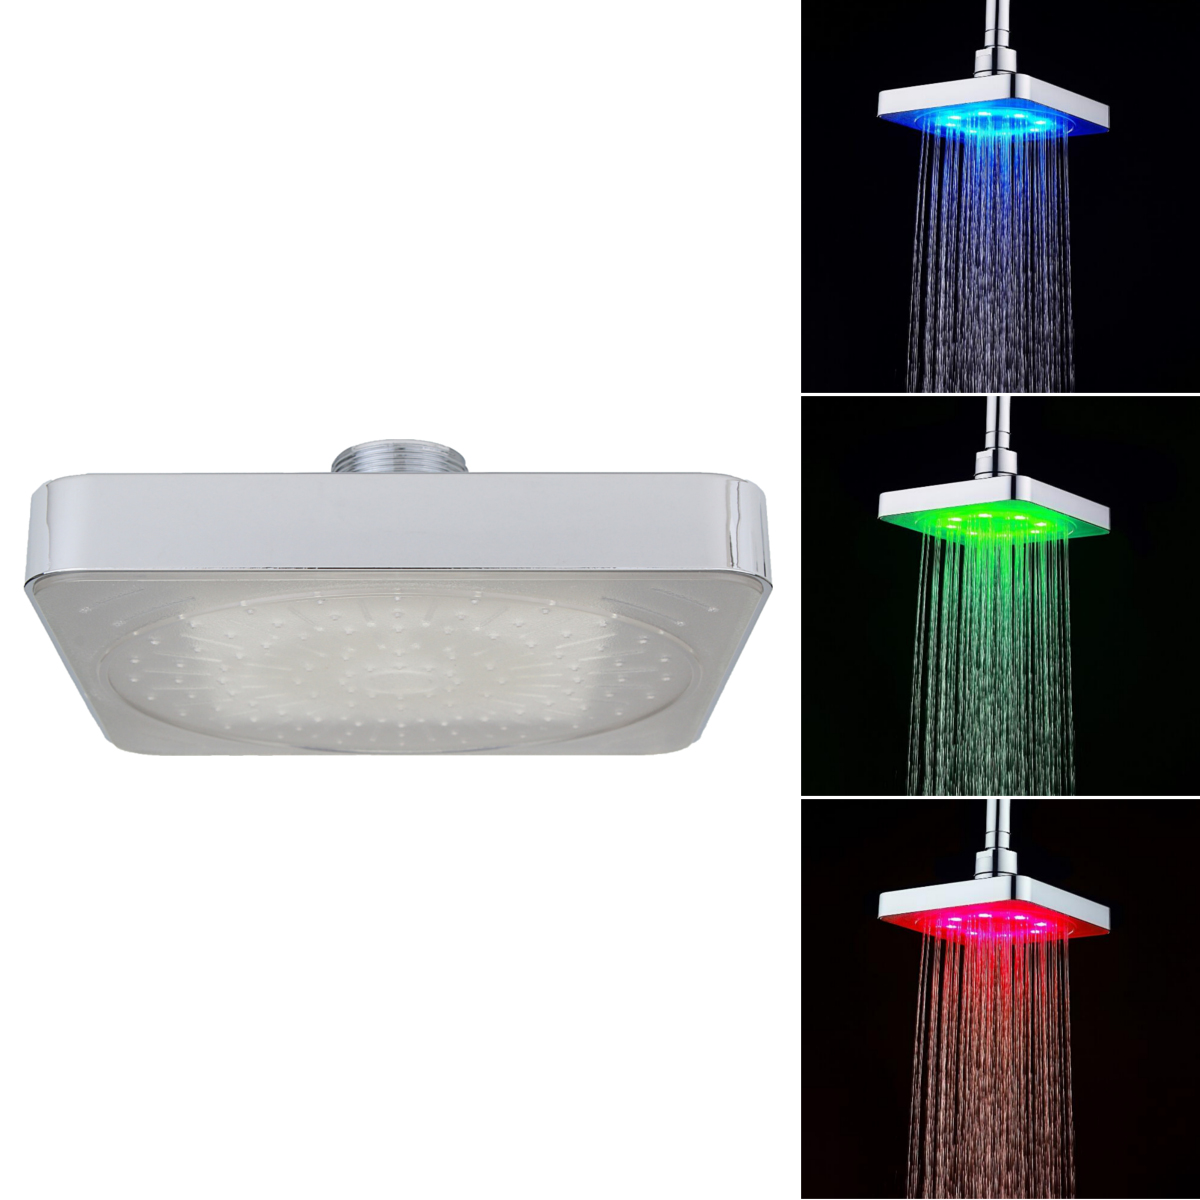 Contrôle de la temperature de l'eau 3 couleurs LED Changement de la tete de douche Lumiere Salle de bain Salle de bain